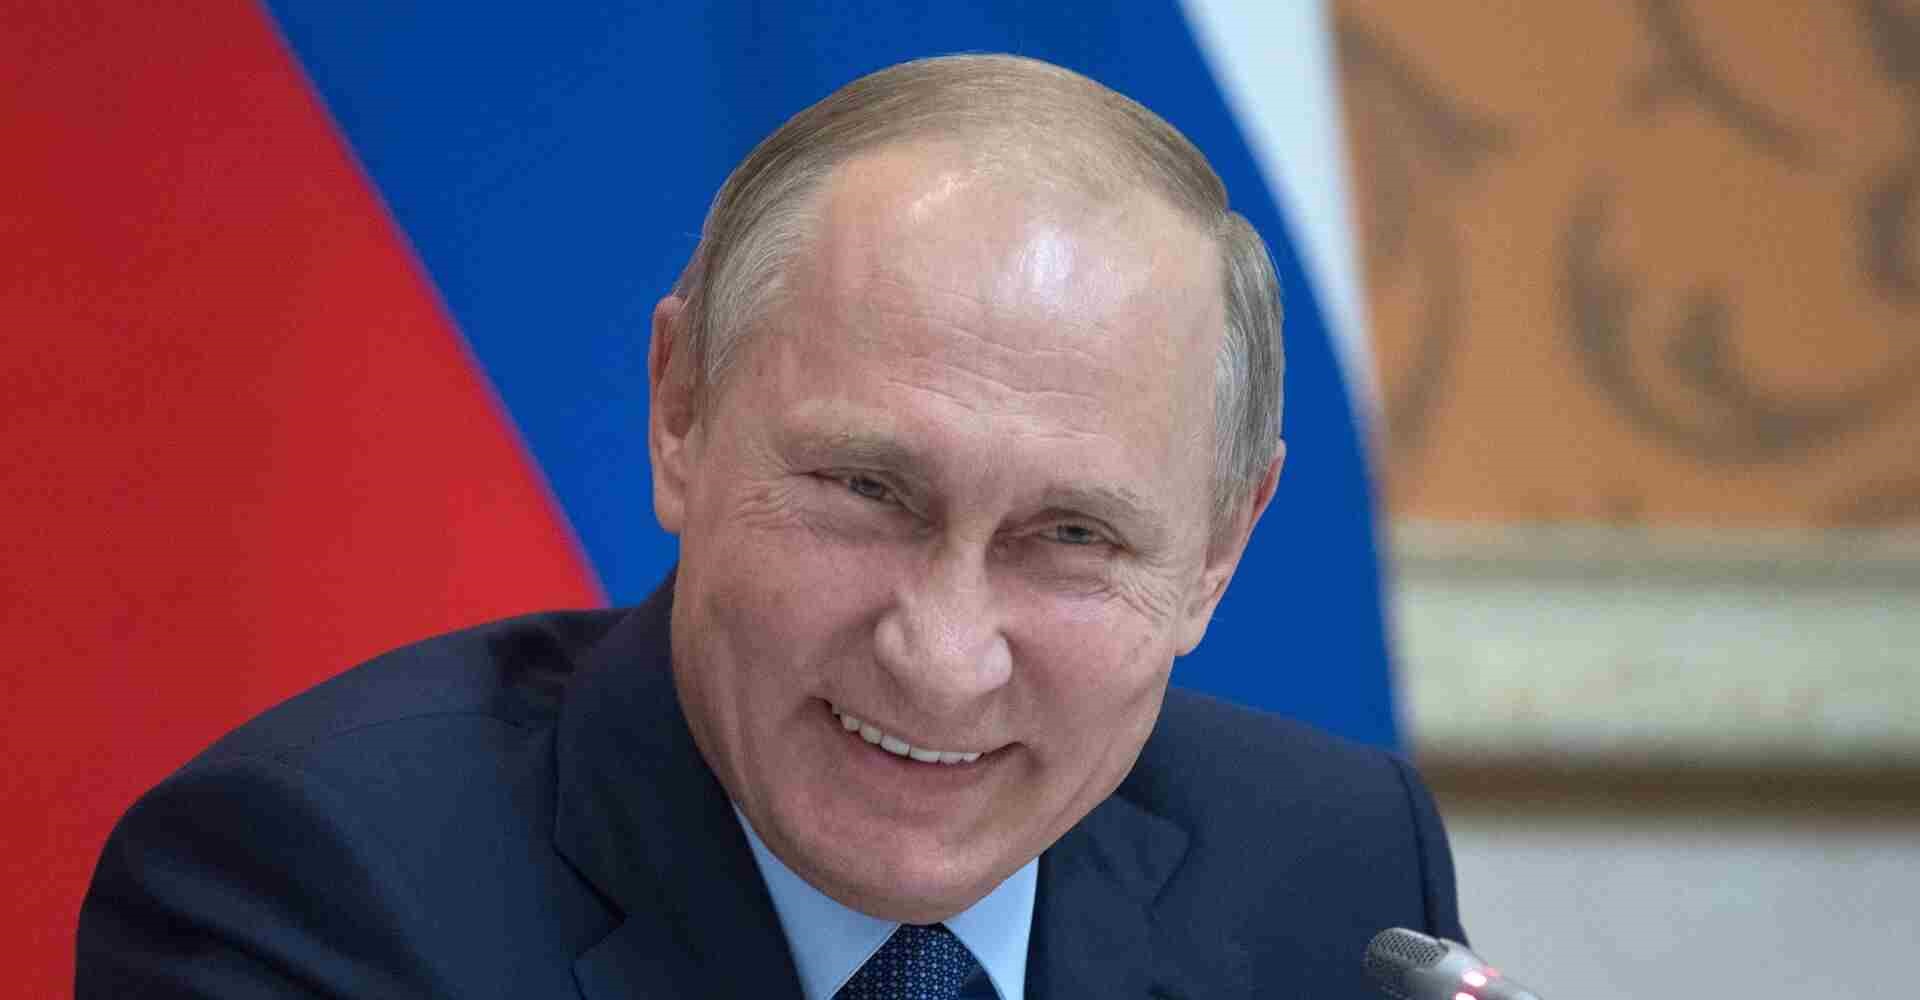 CPI : Mandat d’arrêt international à l’encontre de Vladimir Poutine